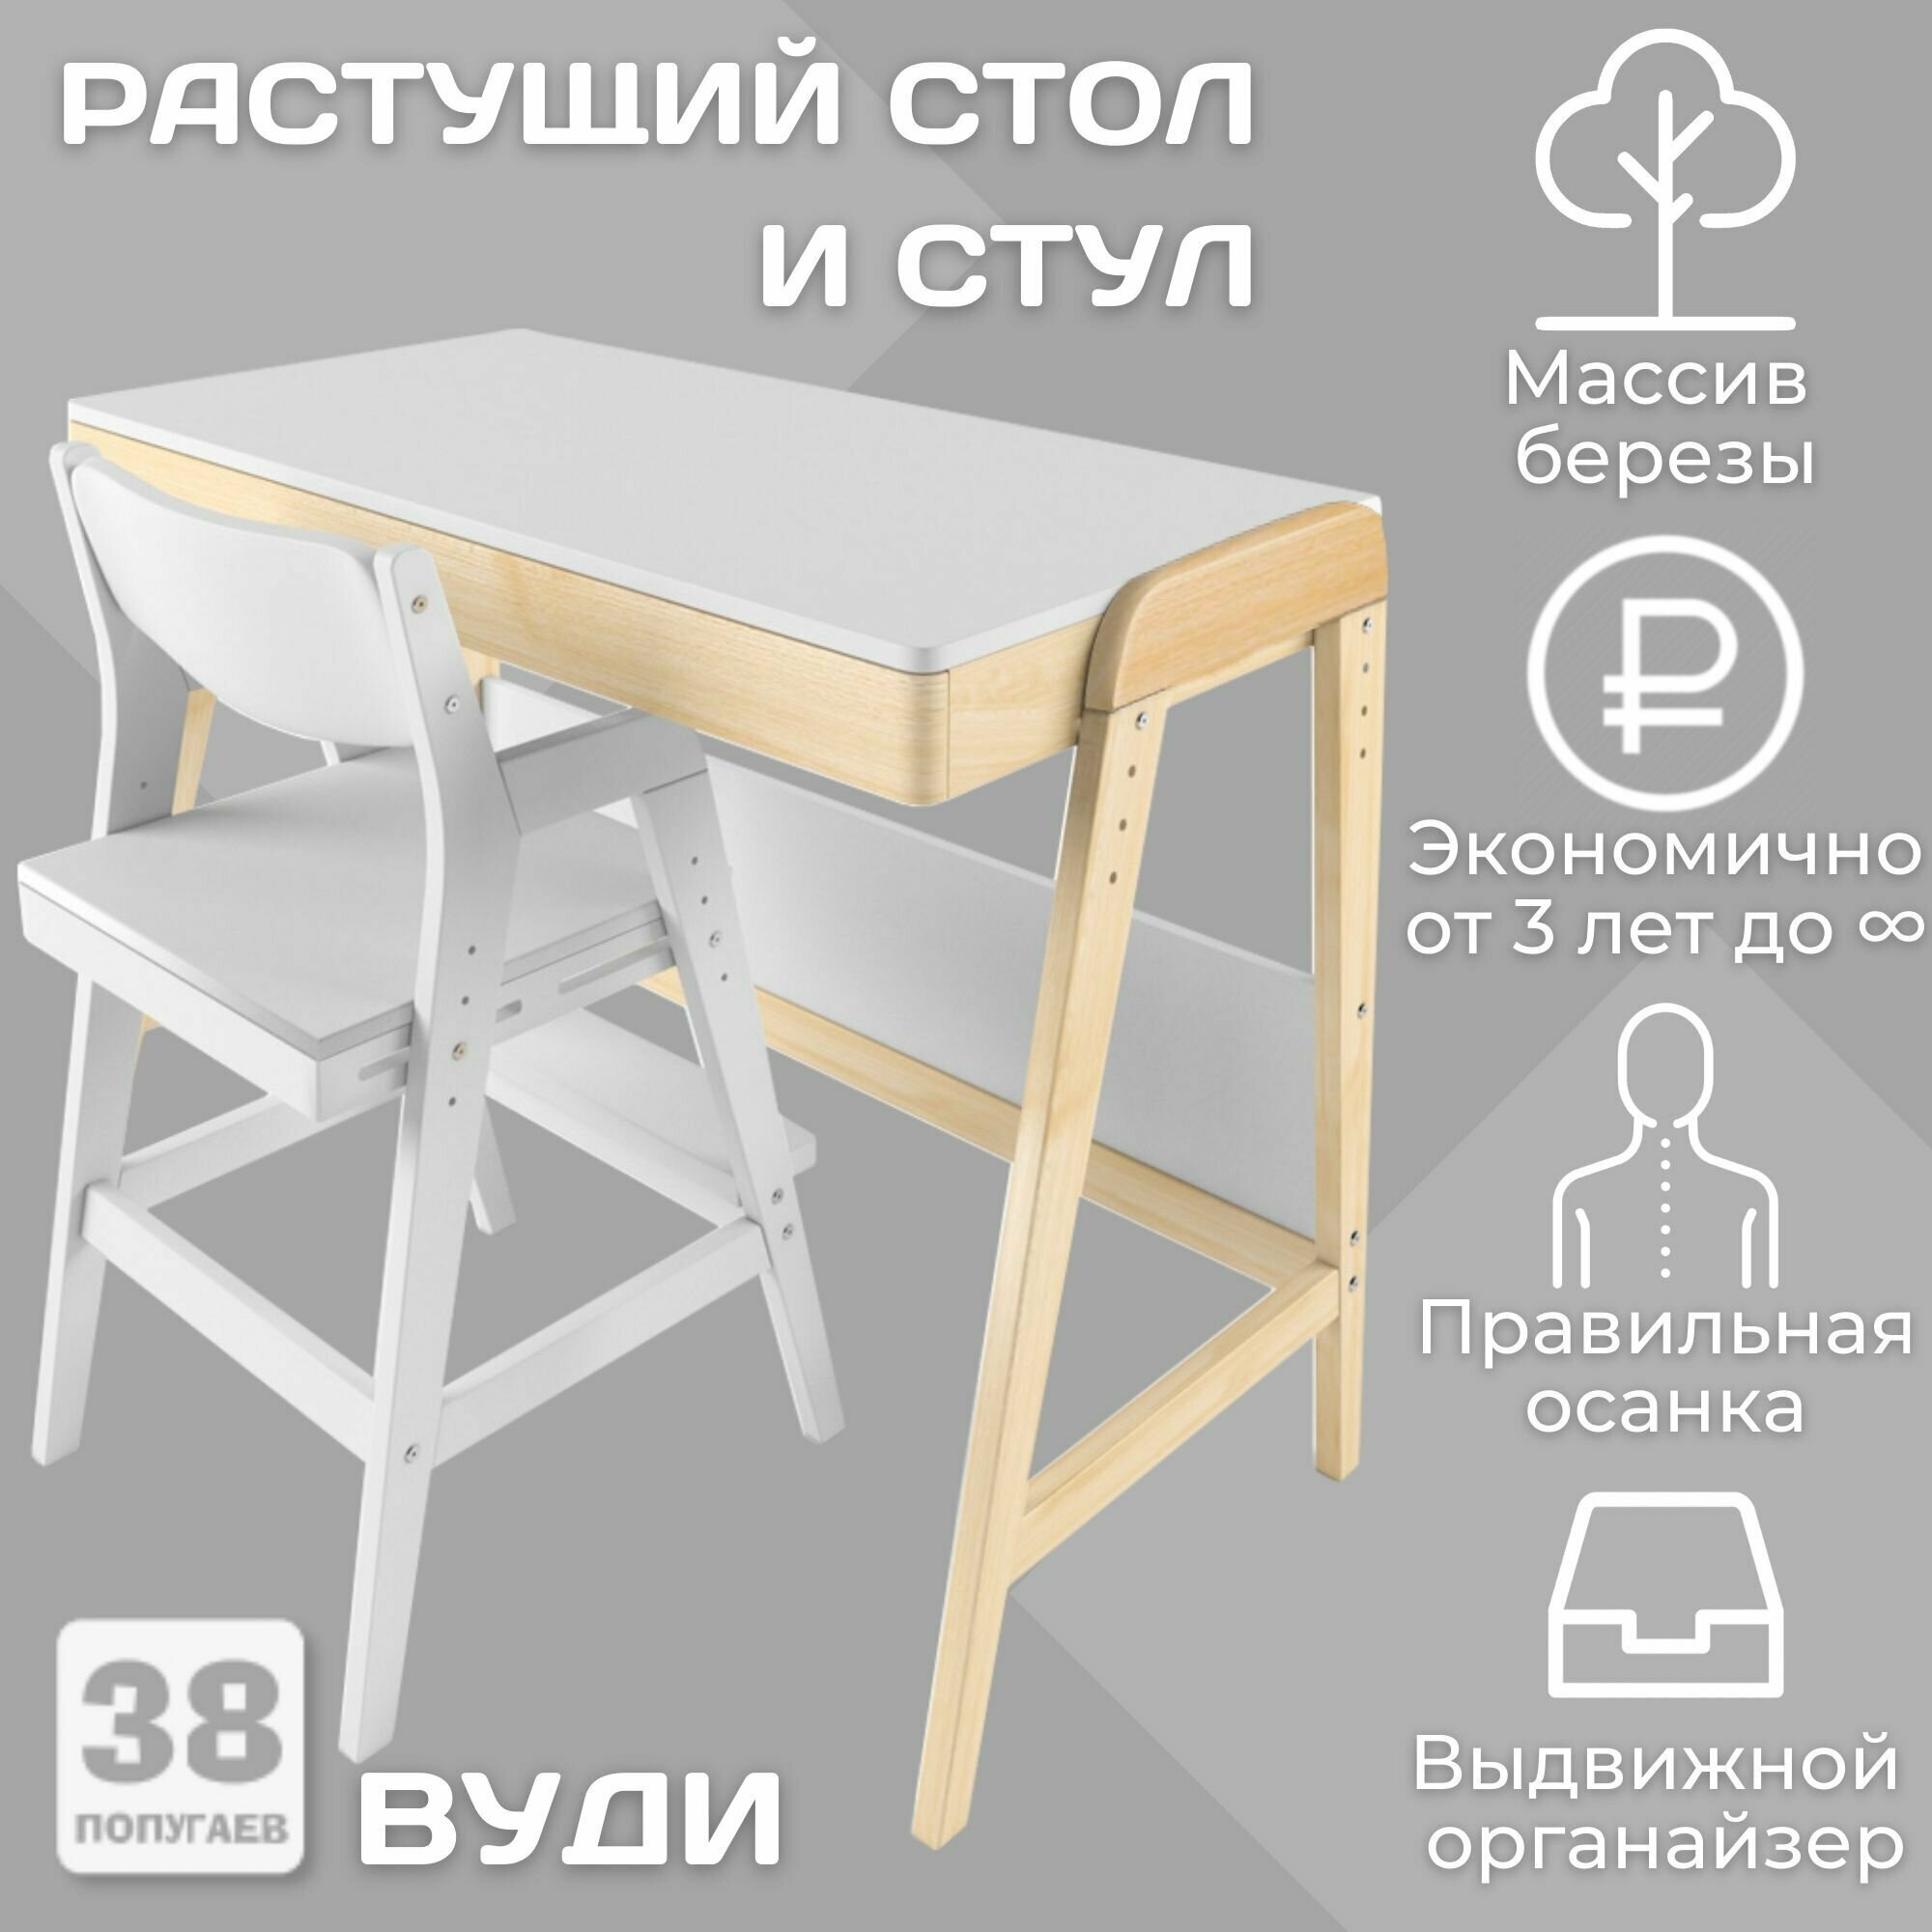 Комплект растущий стол и стул "Вуди" (38 попугаев), цвет Комбо-Белый/Белый